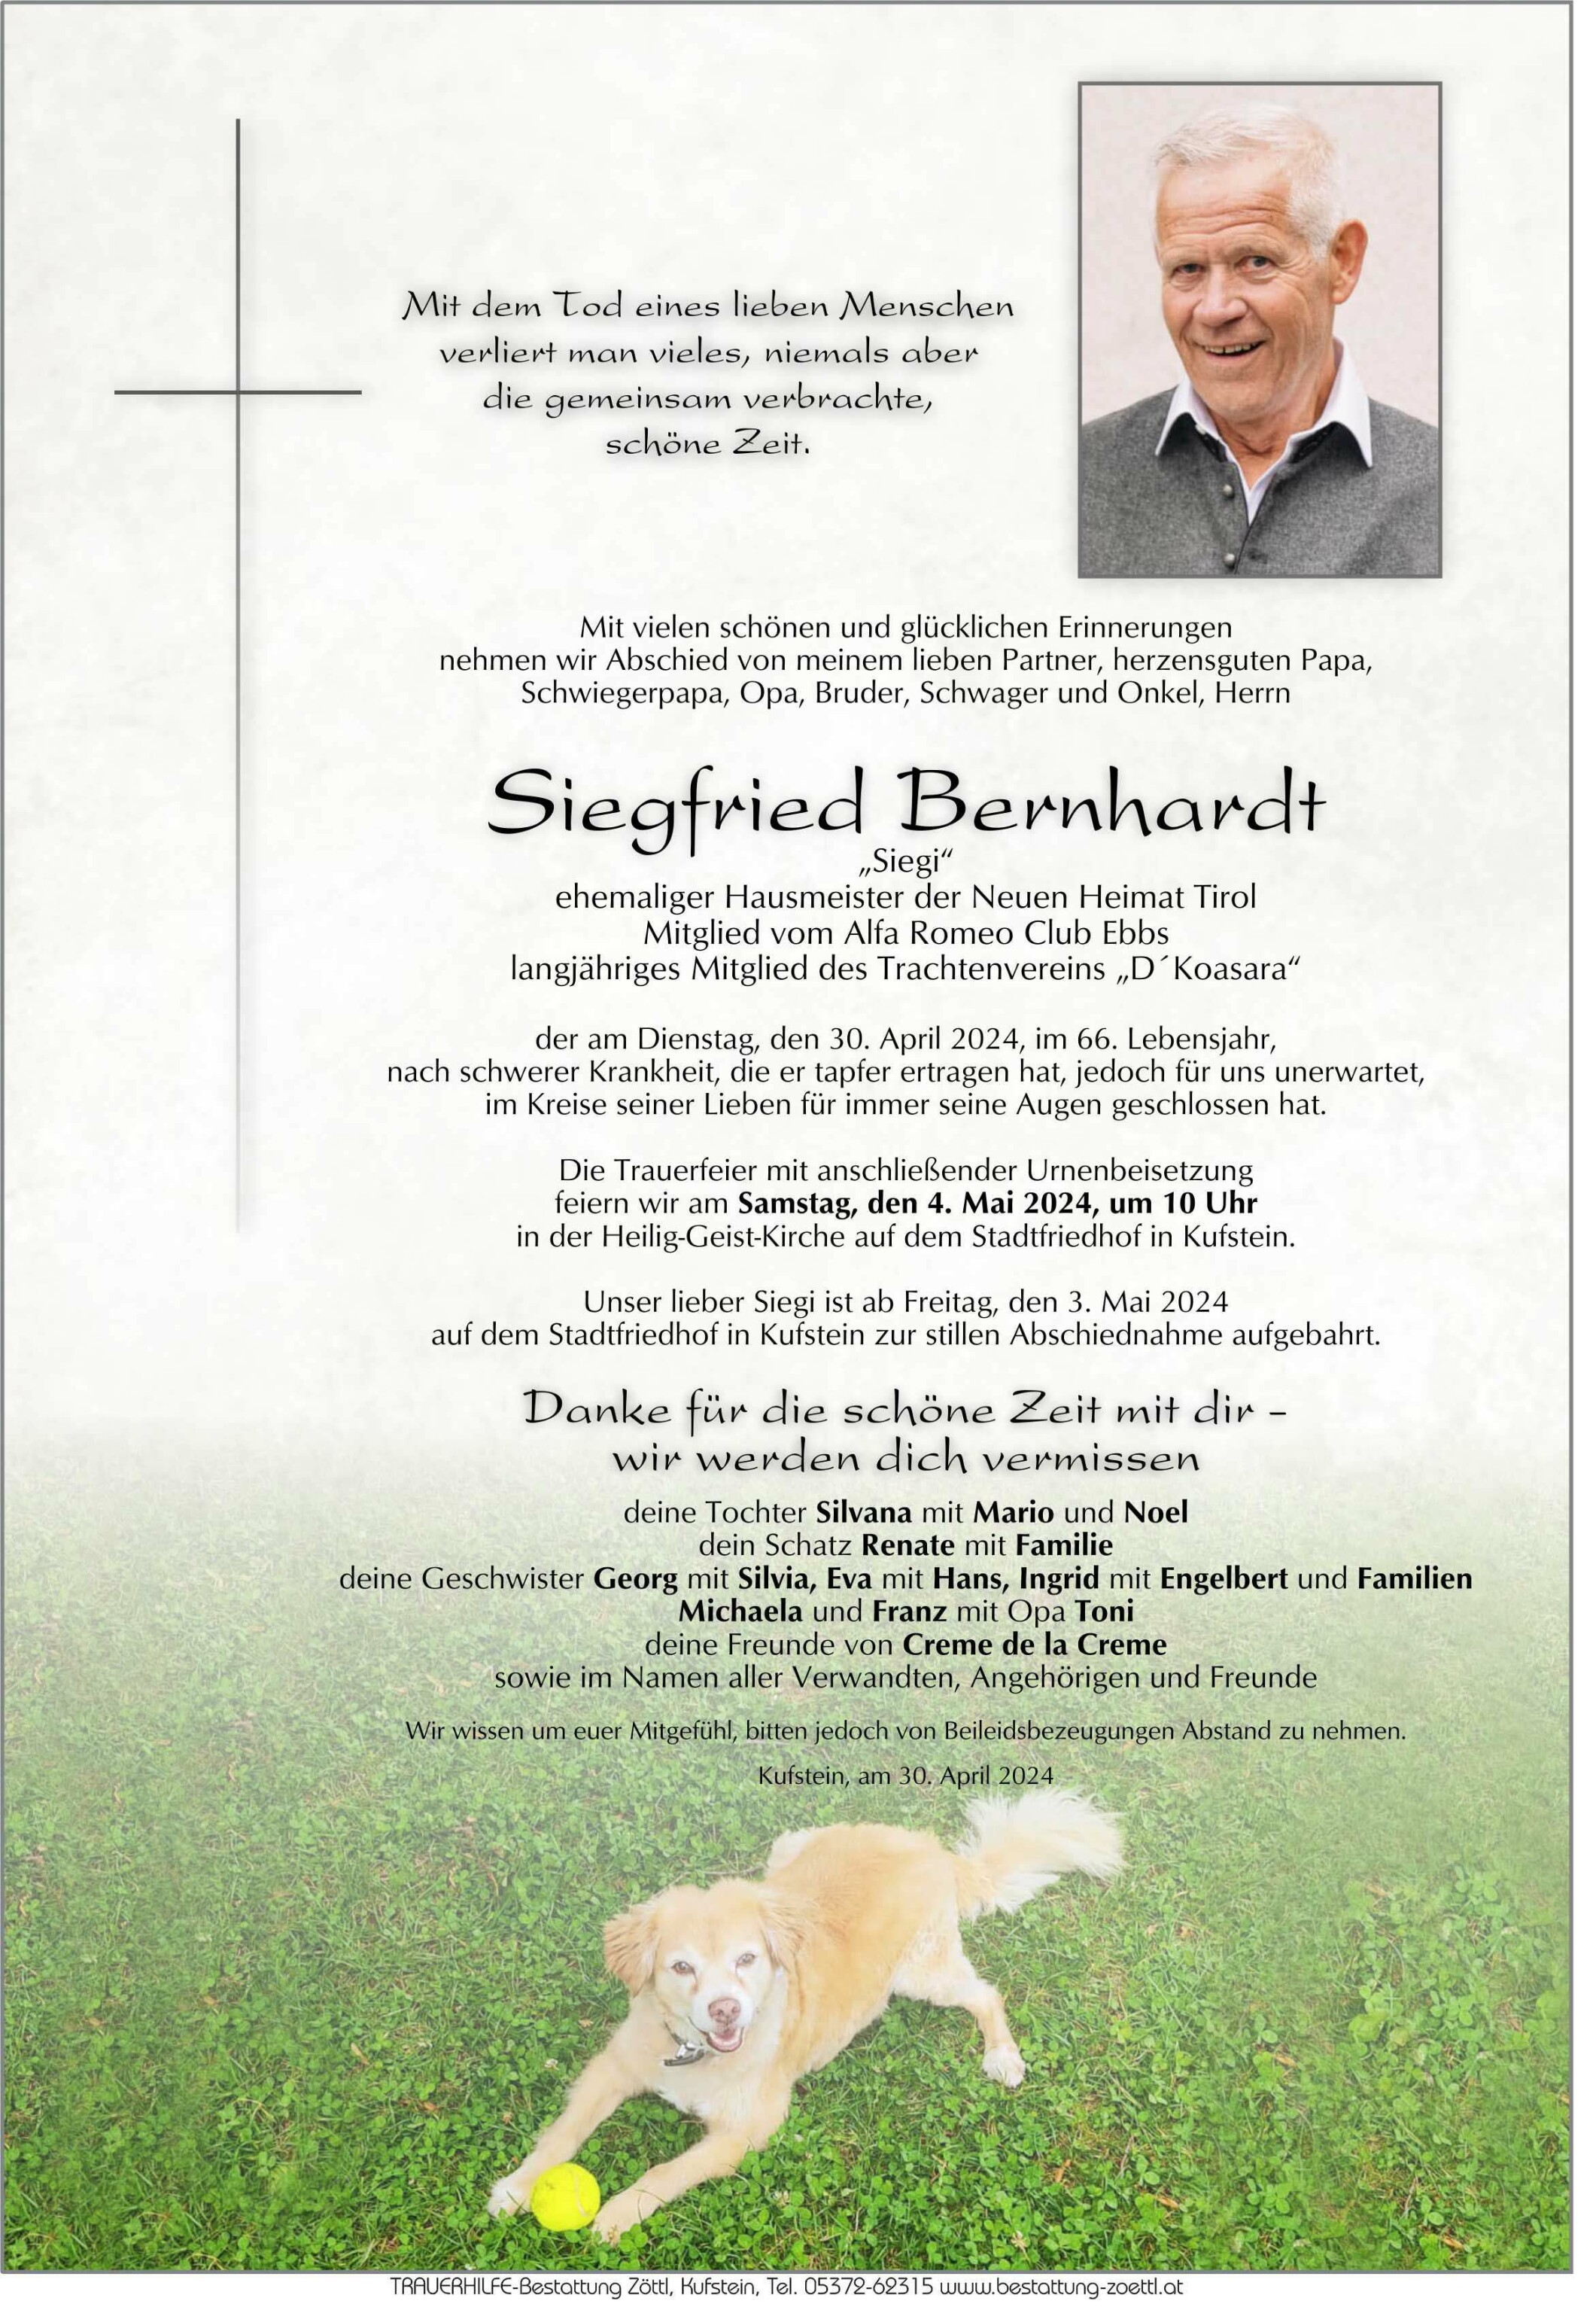 Siegfried Bernhardt